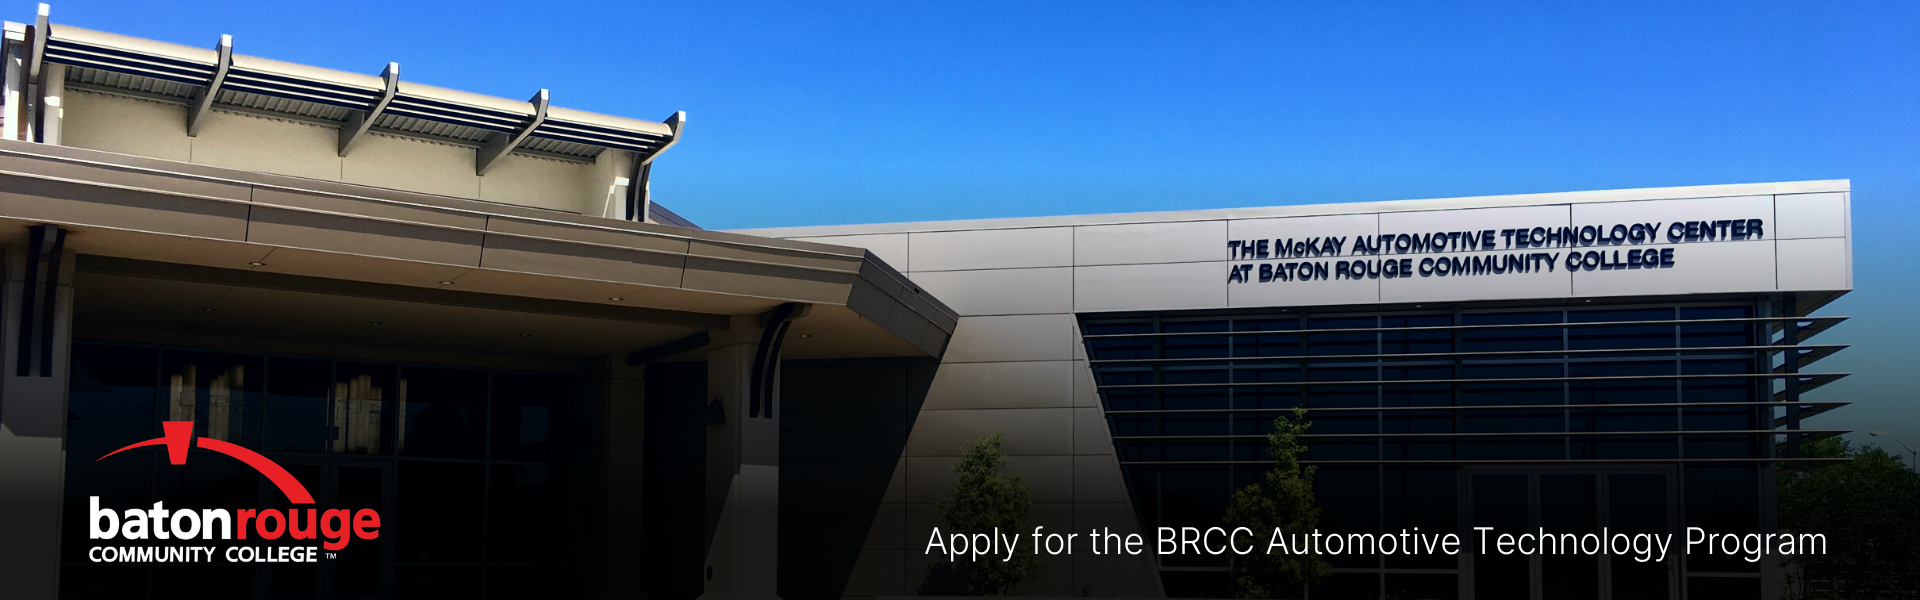 BRCC McKay Automotive Technology Center at Baton Rouge